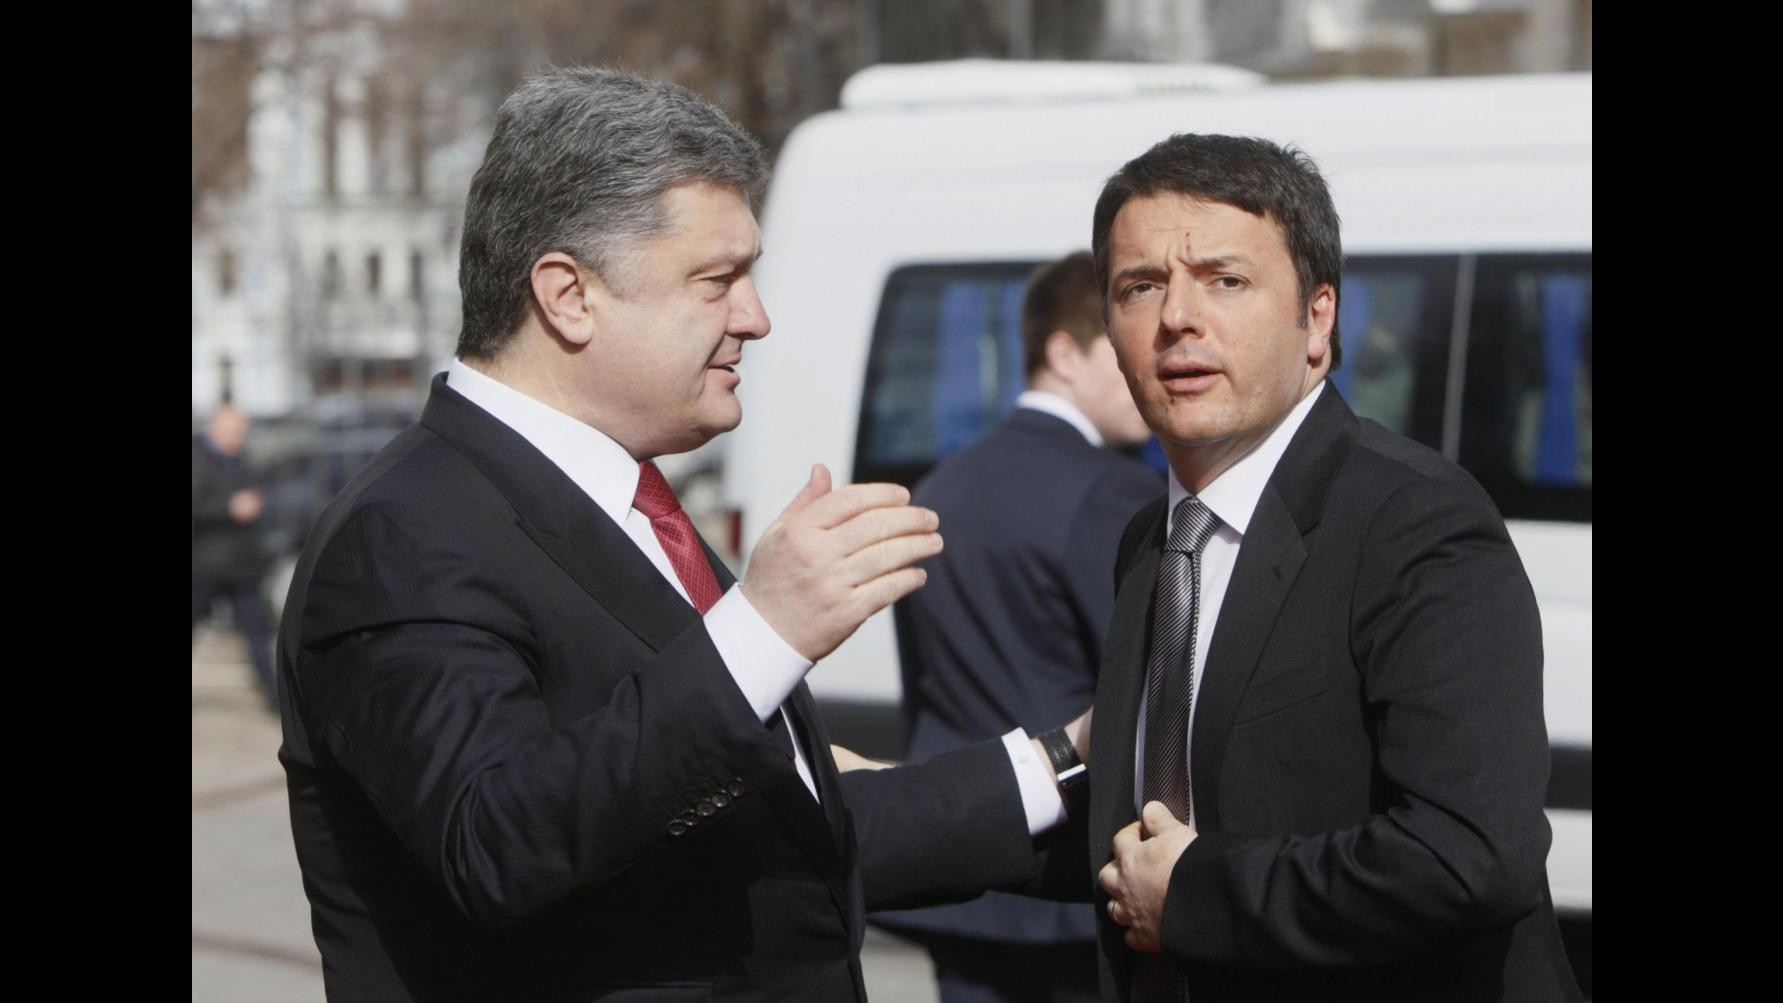 Renzi: Sforzo per efficacia accordi Minsk, rispettare sovranità Ucraina